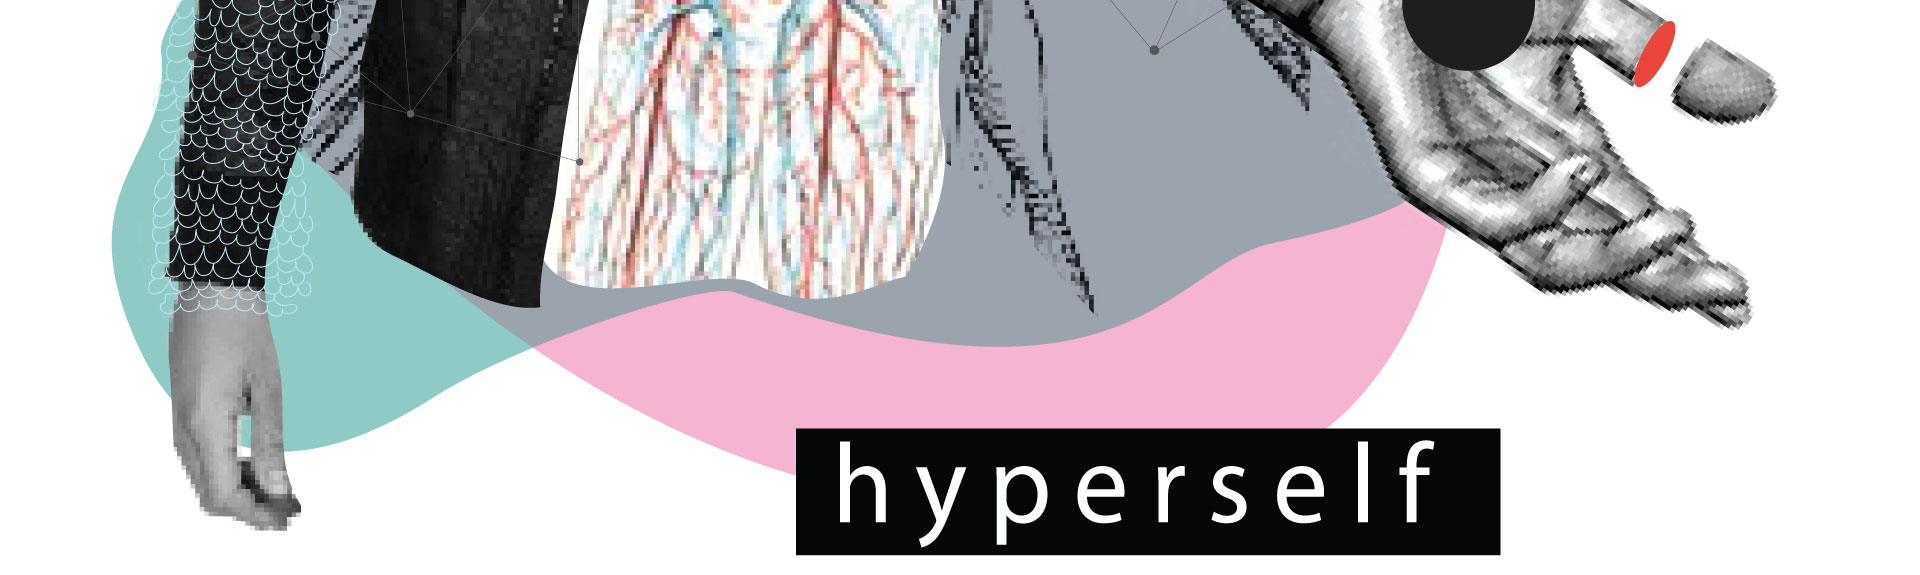 Hyperself